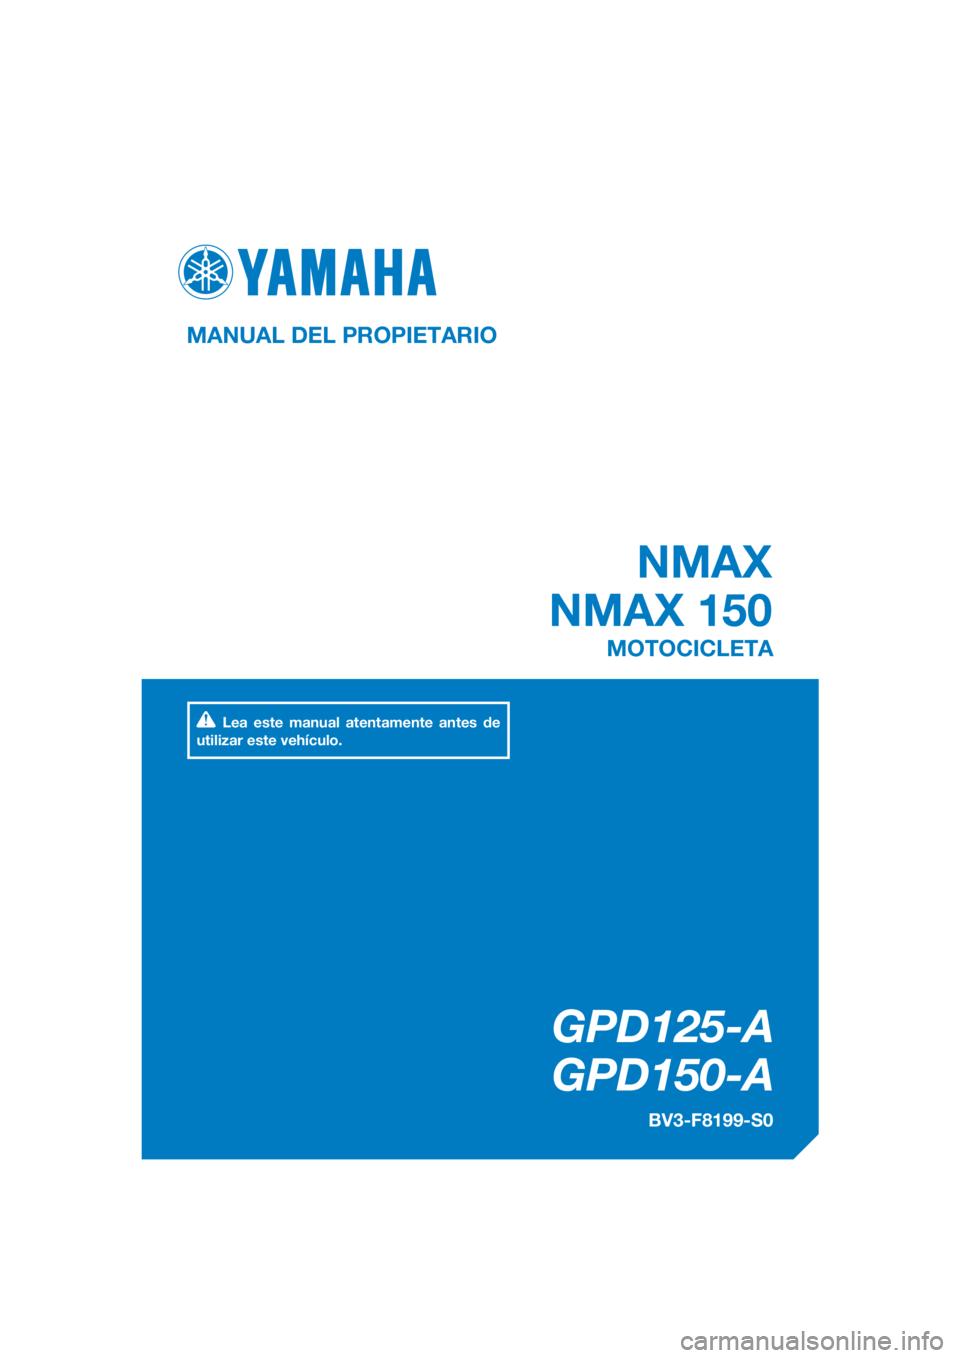 YAMAHA NMAX 150 2018  Manuale de Empleo (in Spanish) DIC183
NMAX
NMAX 150
GPD125-A
GPD150-A
MANUAL DEL PROPIETARIO
BV3-F8199-S0
MOTOCICLETA
Lea este manual atentamente antes de 
utilizar este vehículo.
[Spanish  (S)] 